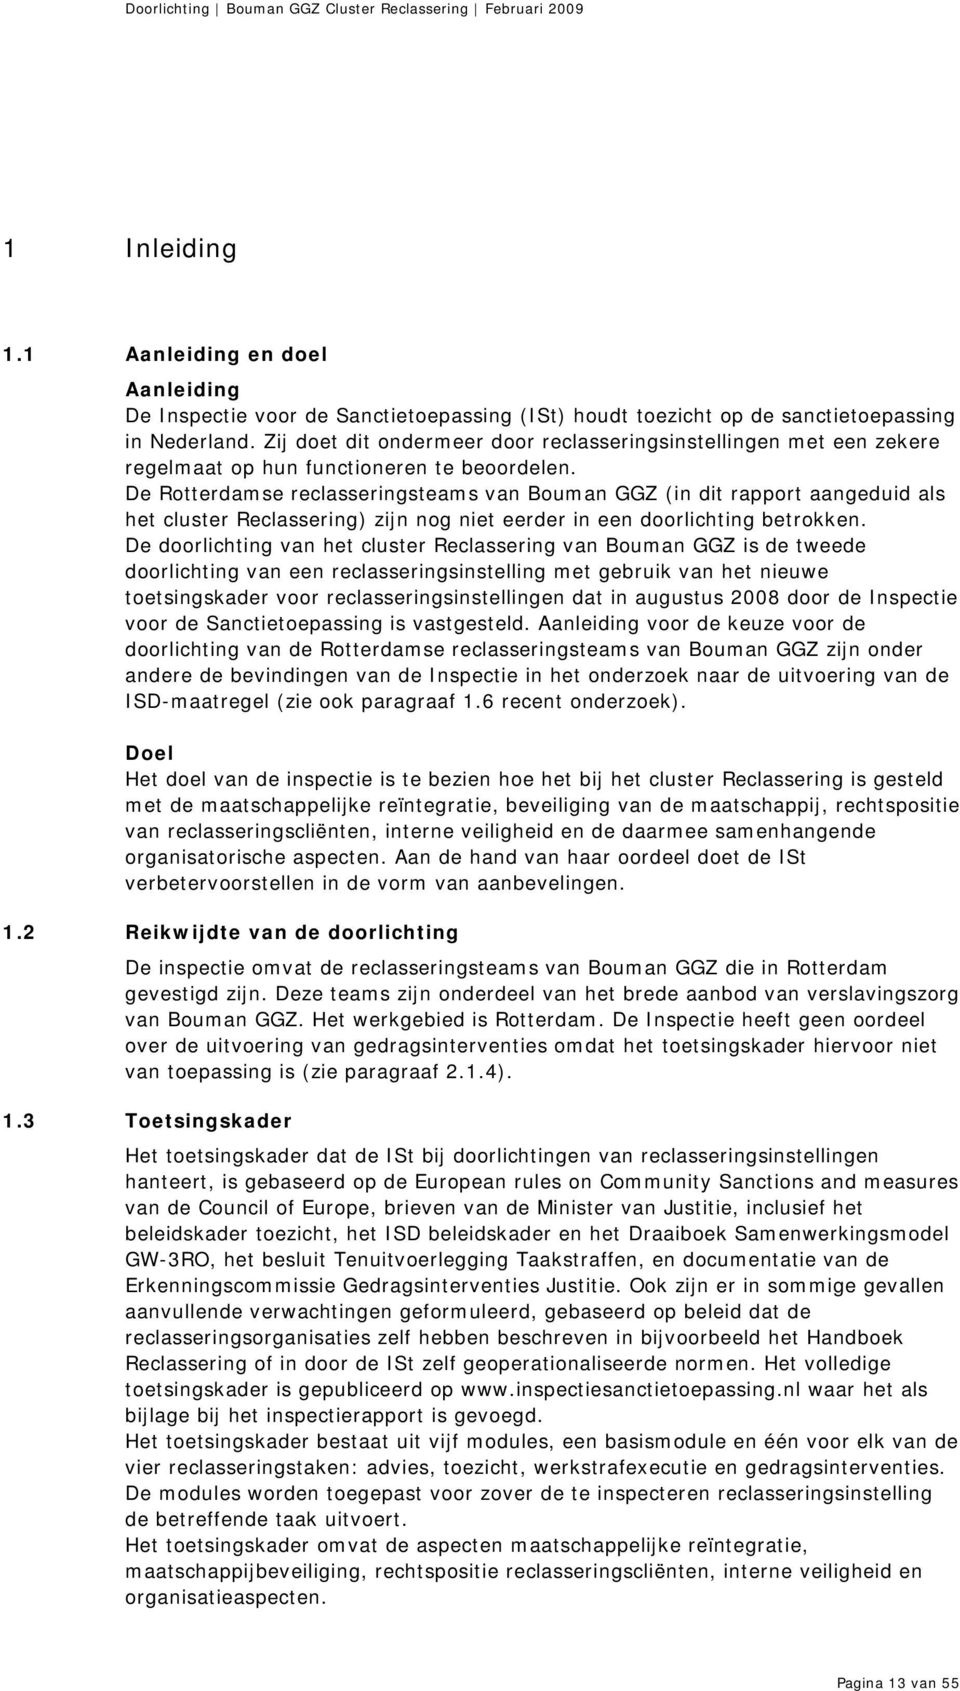 De Rotterdamse reclasseringsteams van Bouman GGZ (in dit rapport aangeduid als het cluster Reclassering) zijn nog niet eerder in een doorlichting betrokken.